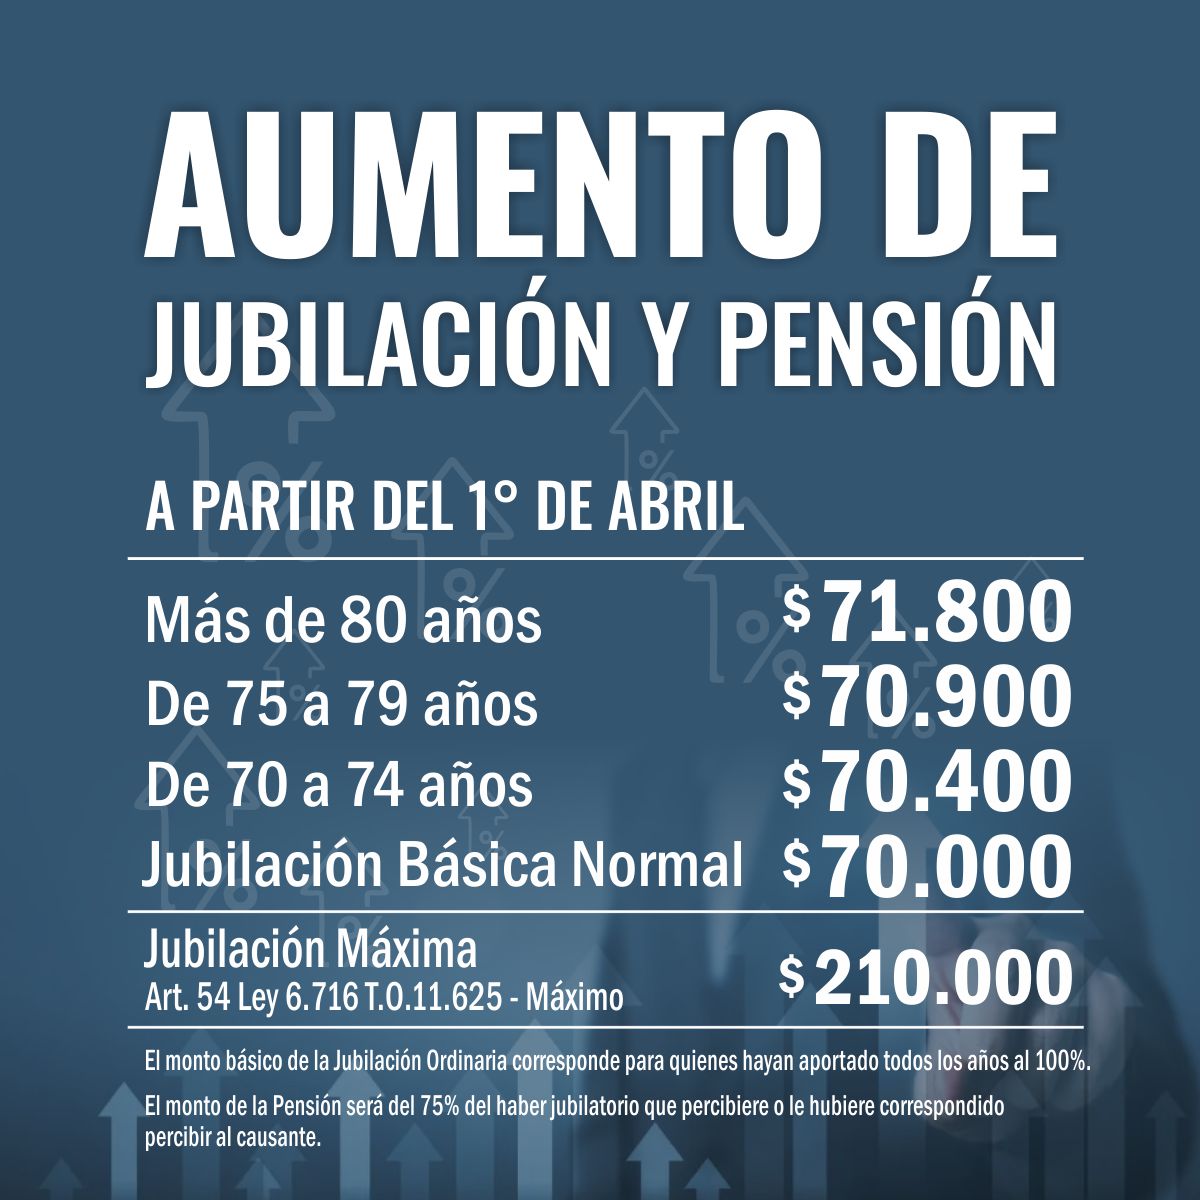 AUMENTO DE JUBILACIÓN Y PENSIÓN 27,3%